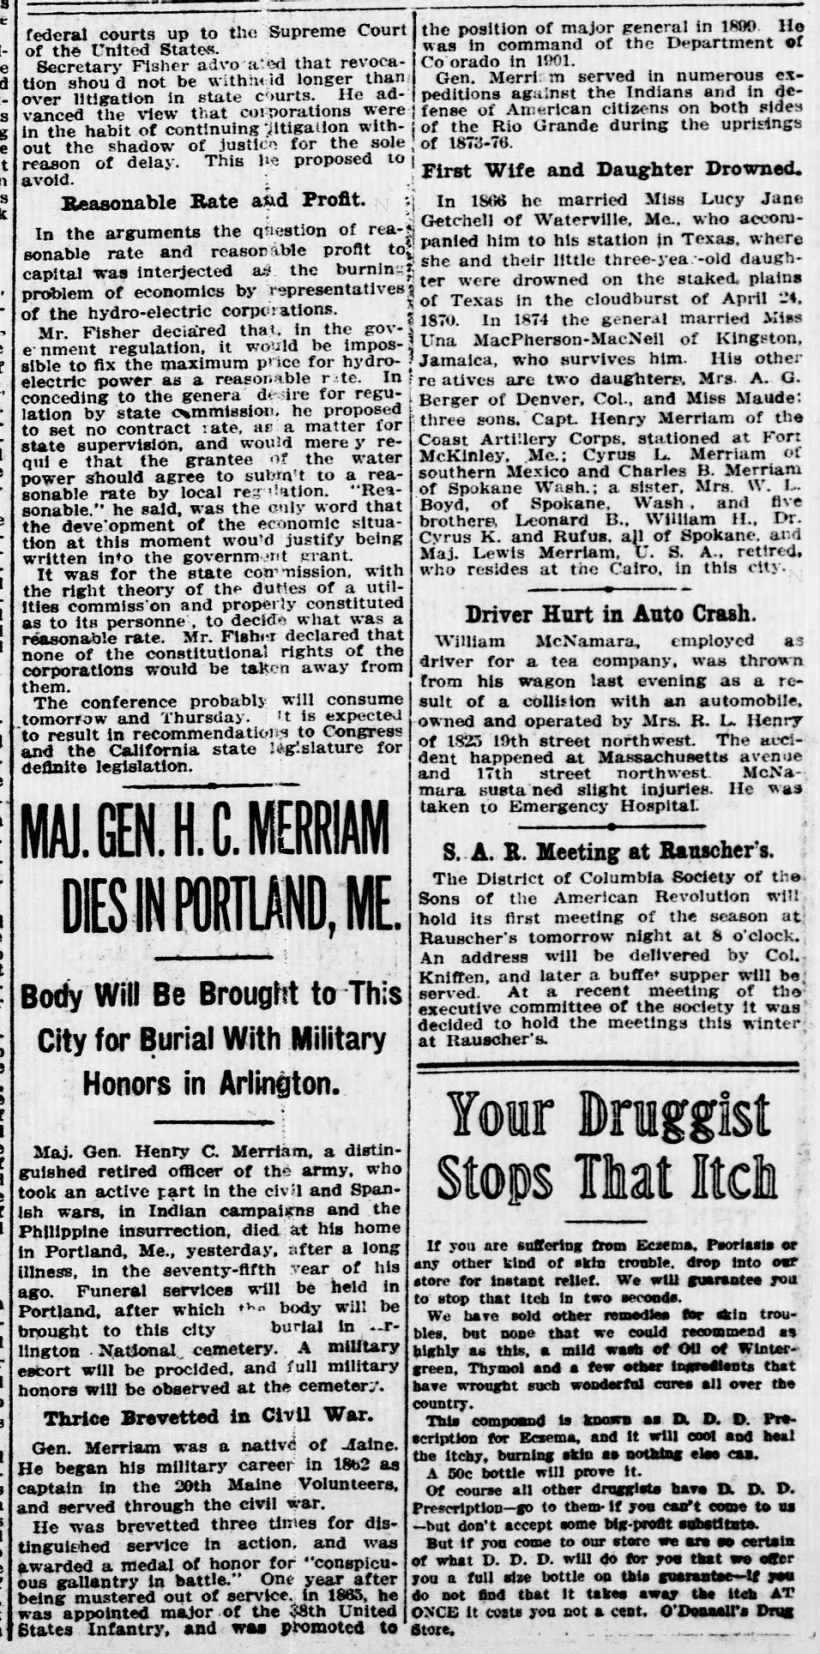 Maj. Gen. H. C. Merriam Dies in Portland, ME